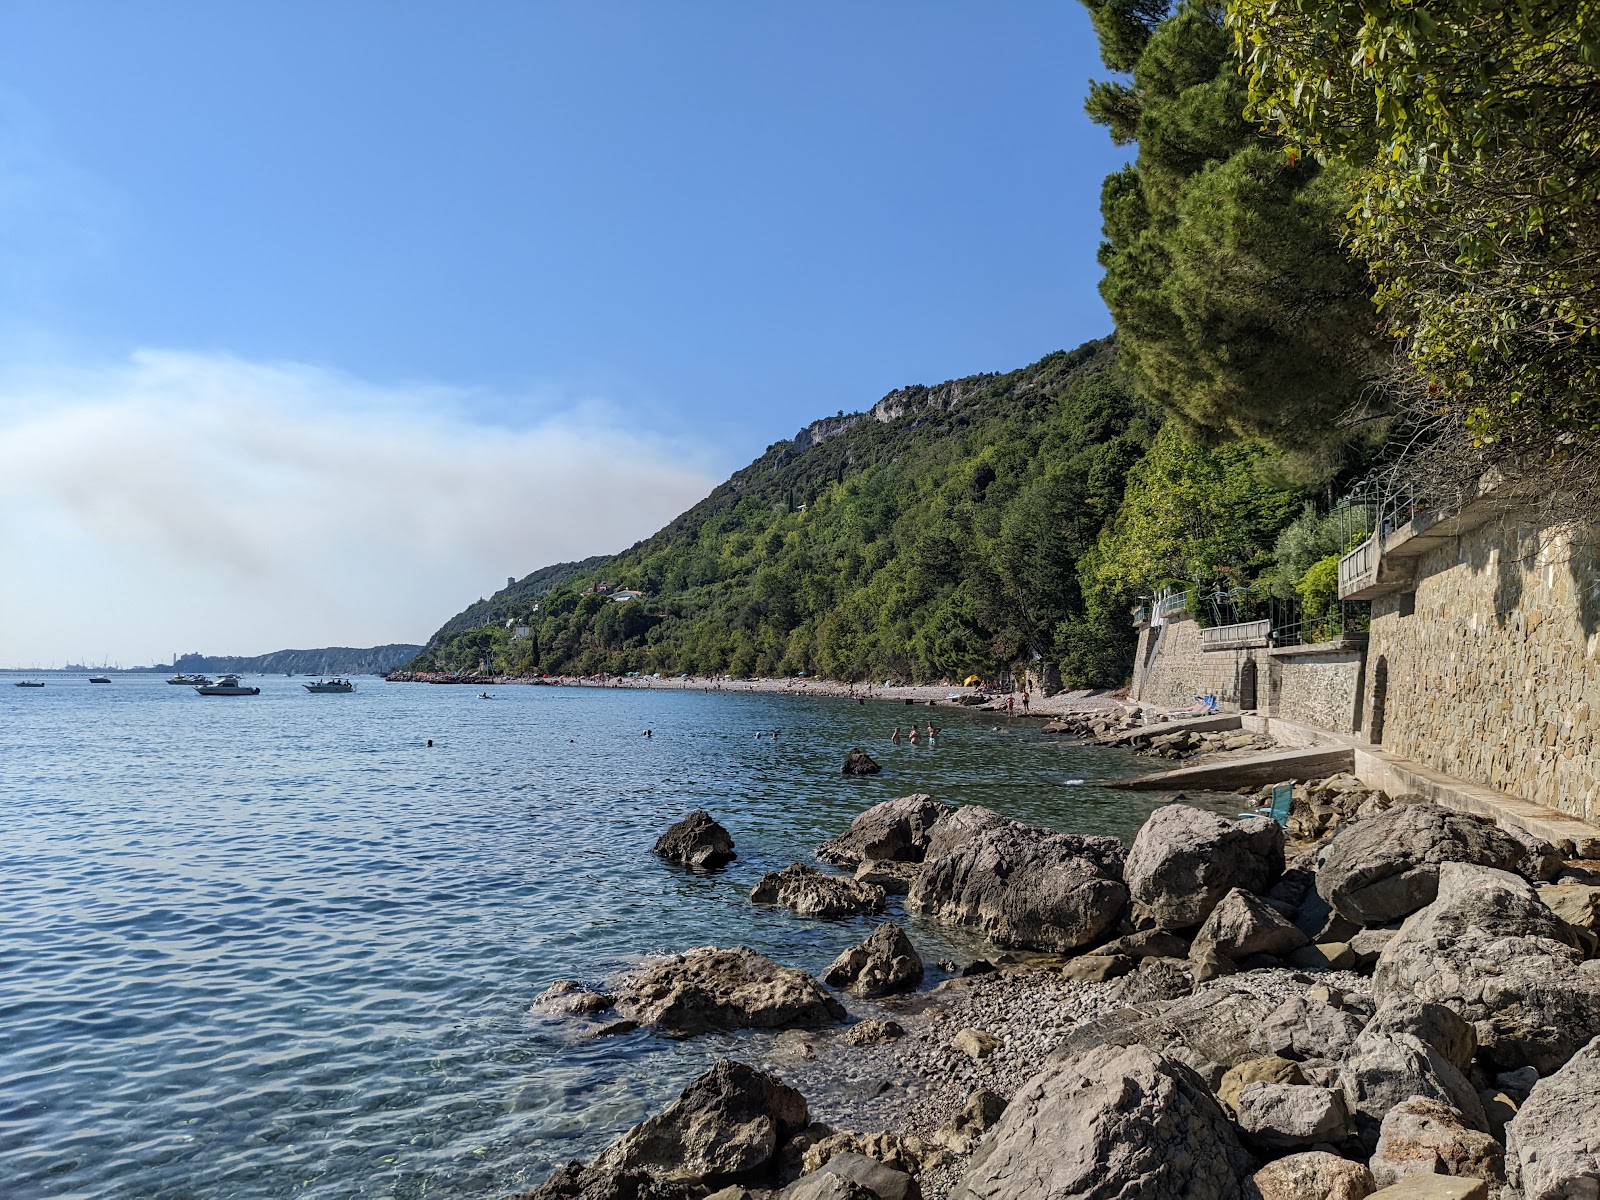 Foto van Spiaggia Liburnia met hoog niveau van netheid